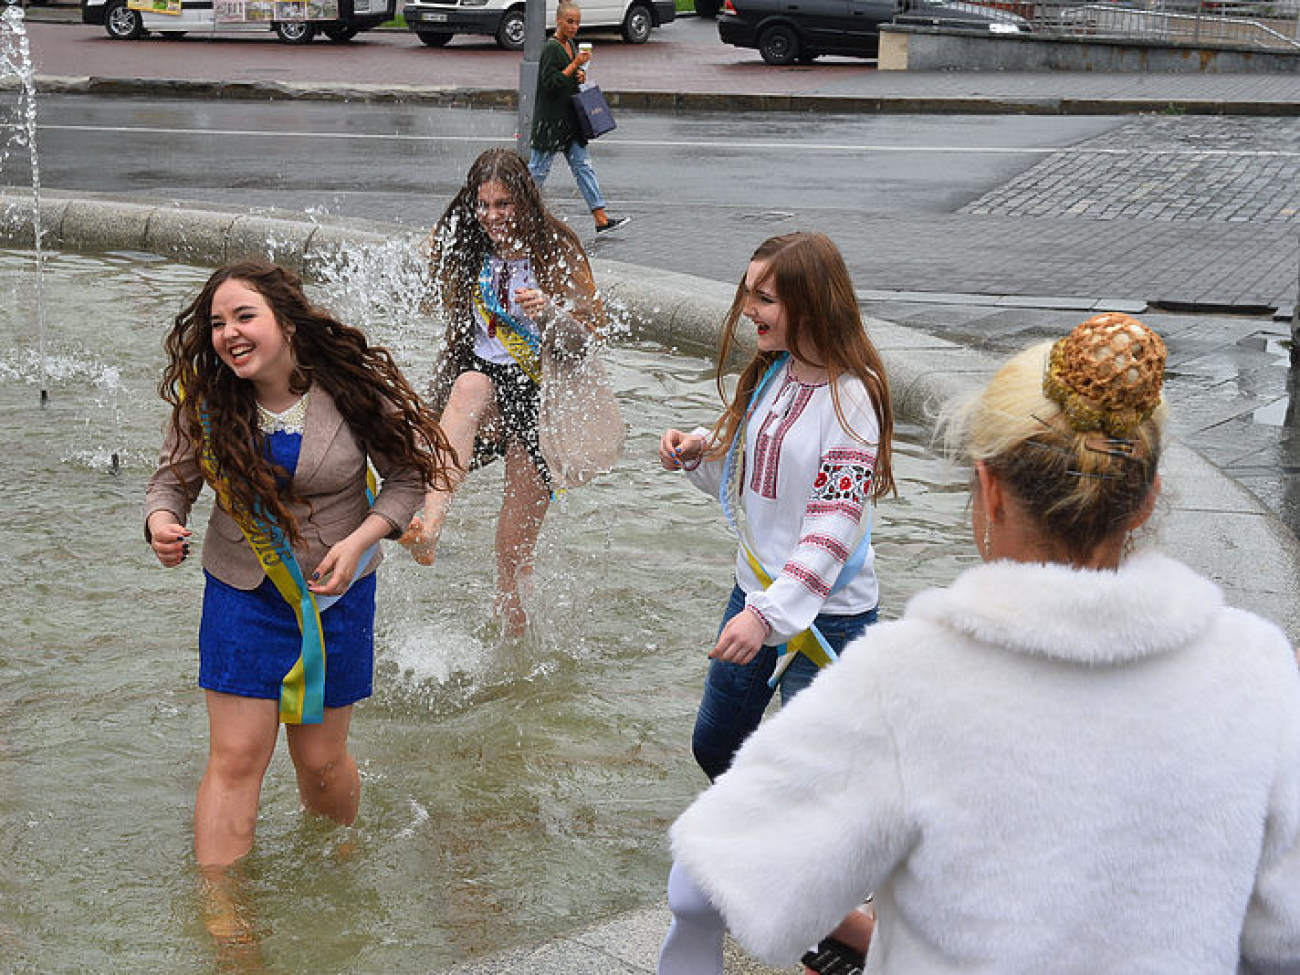 Погода испортила выпускникам праздник: В фонтанах купаются только смелые, 29 мая 2015 г.